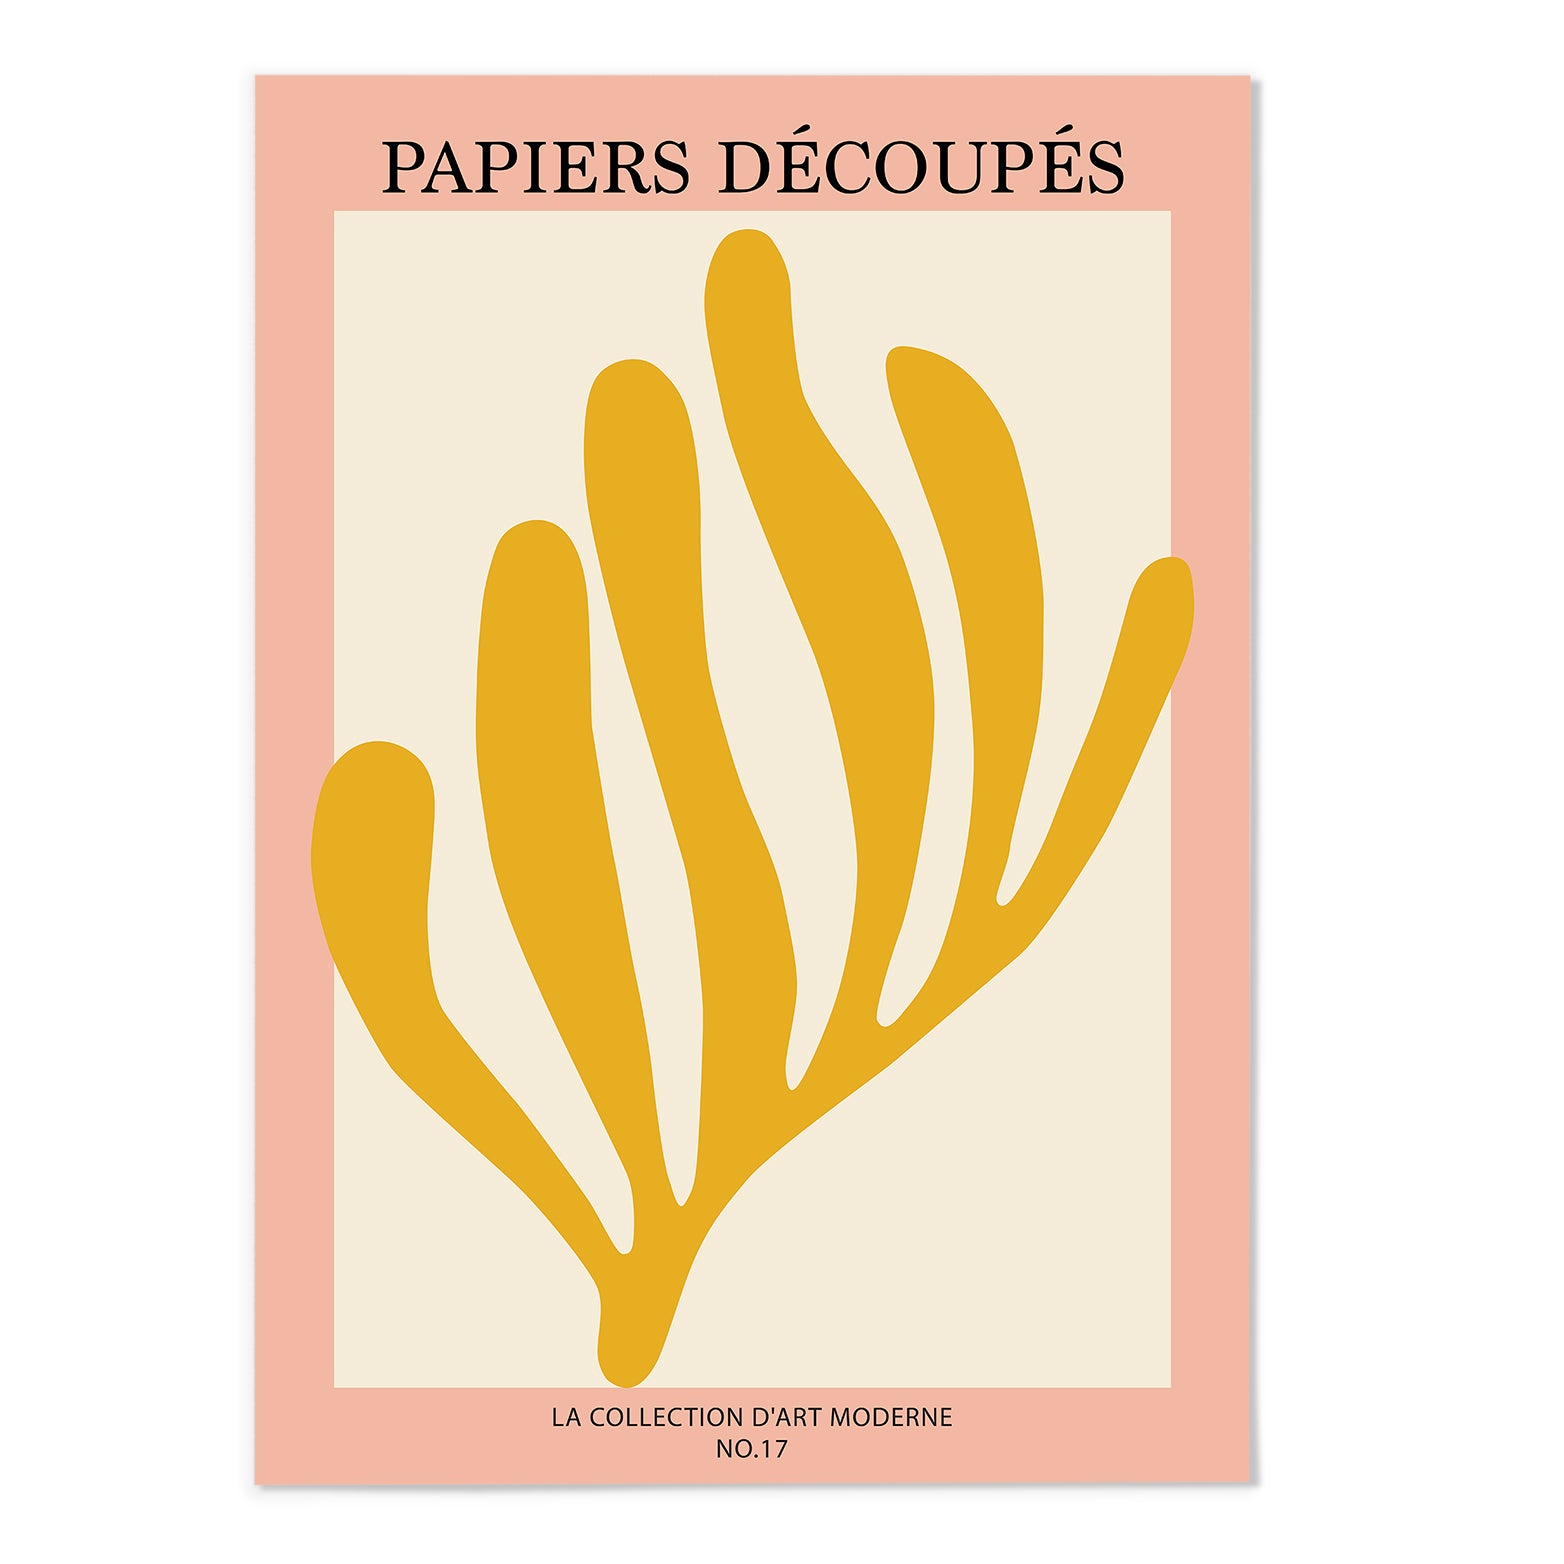 PAPIERS DÉCOUPÉS IV Art Print